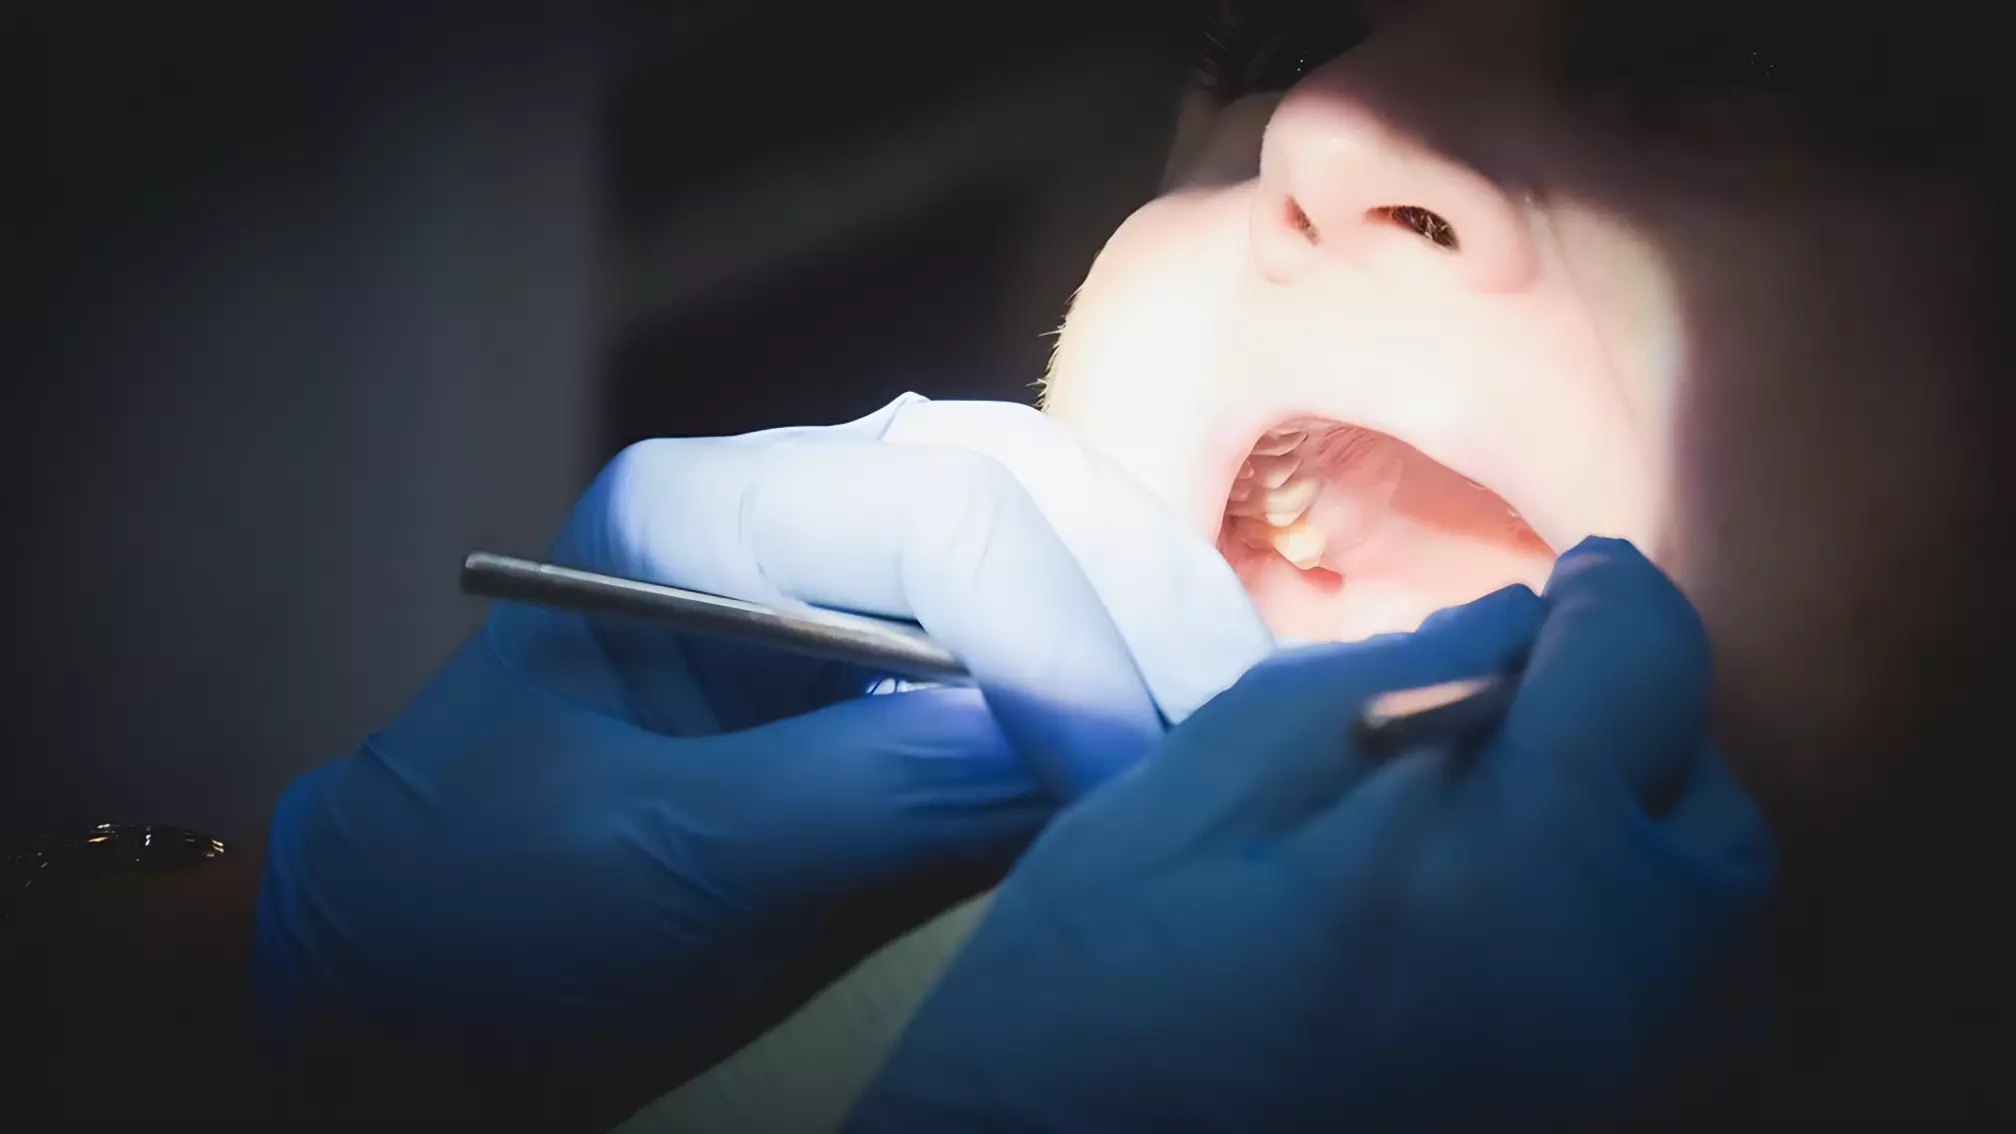 В Челнах у женщины почти сгнила нижняя челюсть из-за страха стоматологов